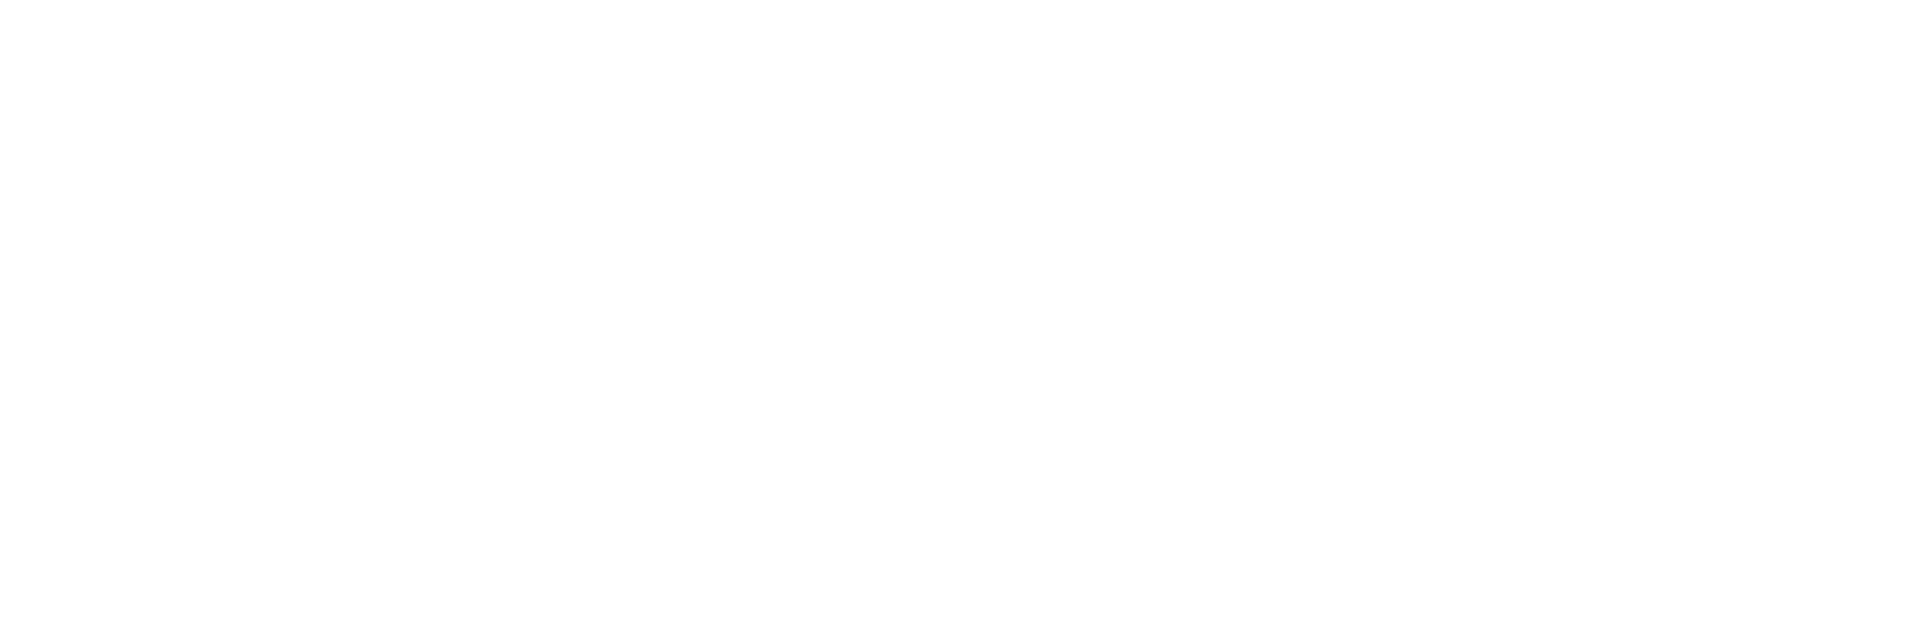 Groupe BCBF LOGO